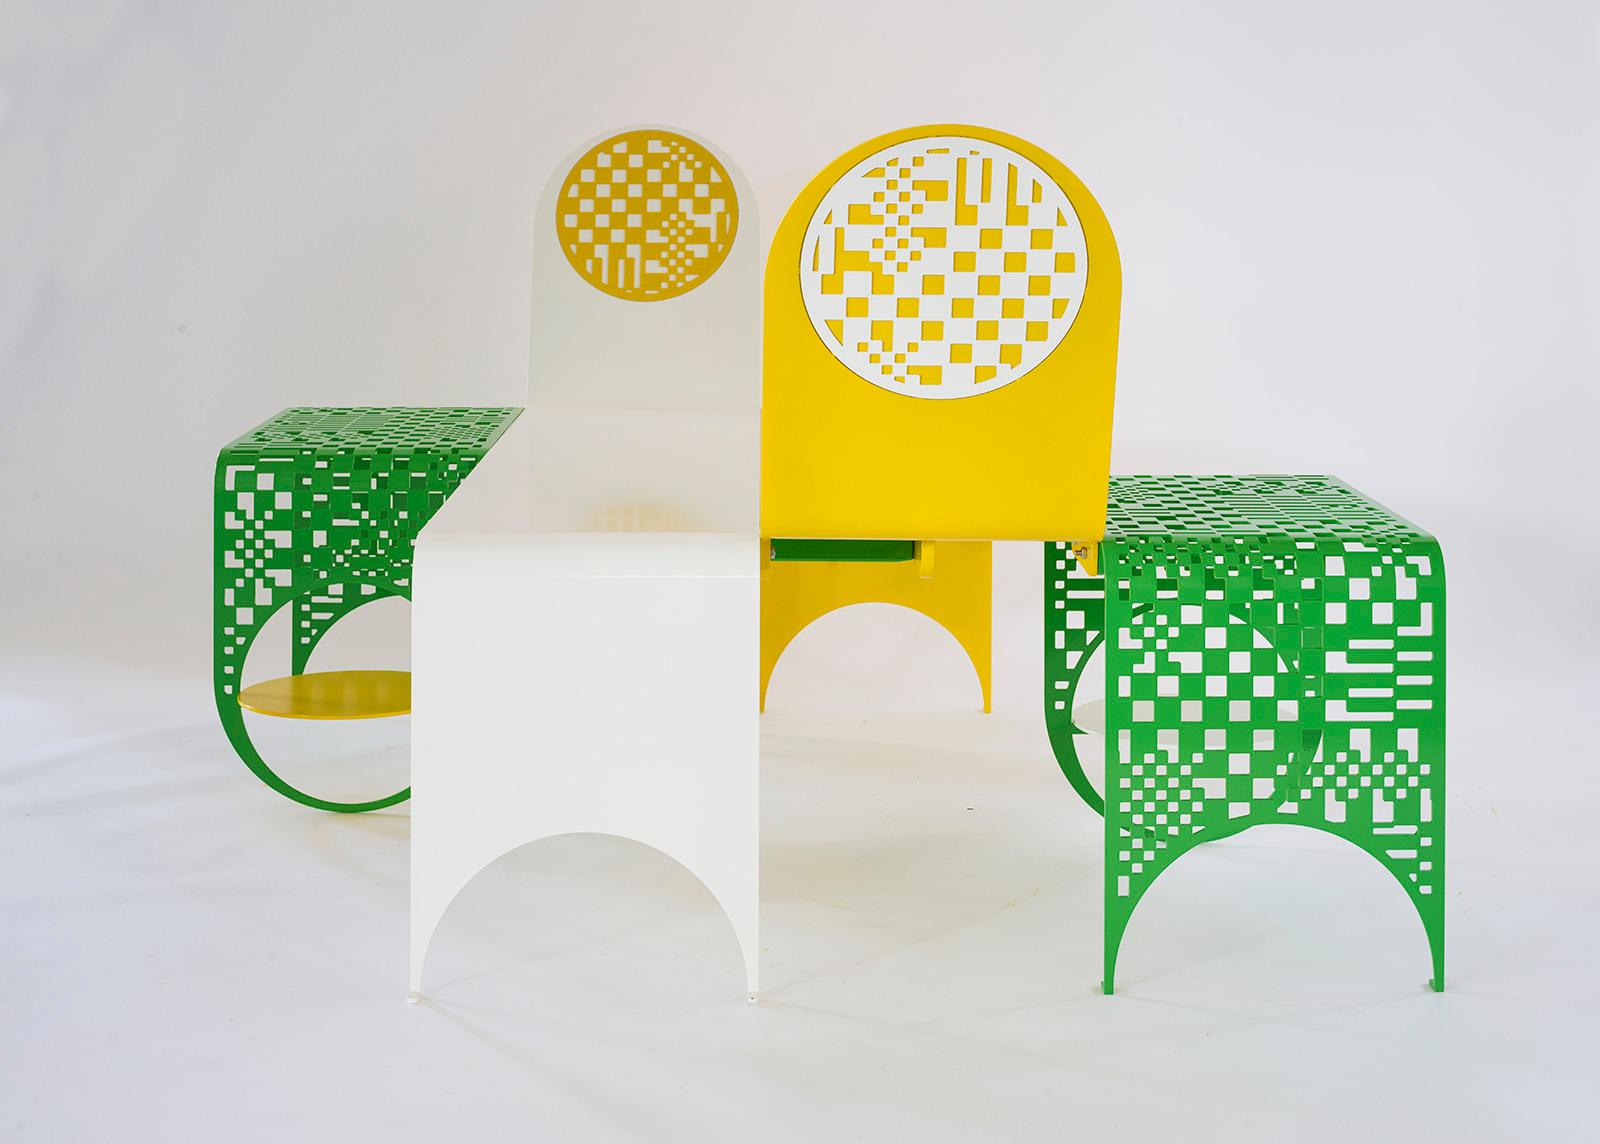 Für ihre erste Outdoor-Möbelkollektion hat Kin & Company in Zusammenarbeit mit dem renommierten Textildesigner Dusen Dusen die Thin Check Chaise und den Thin Check Table entworfen, ein Set aus verspielten Loungesesseln und Beistelltischen, die mit